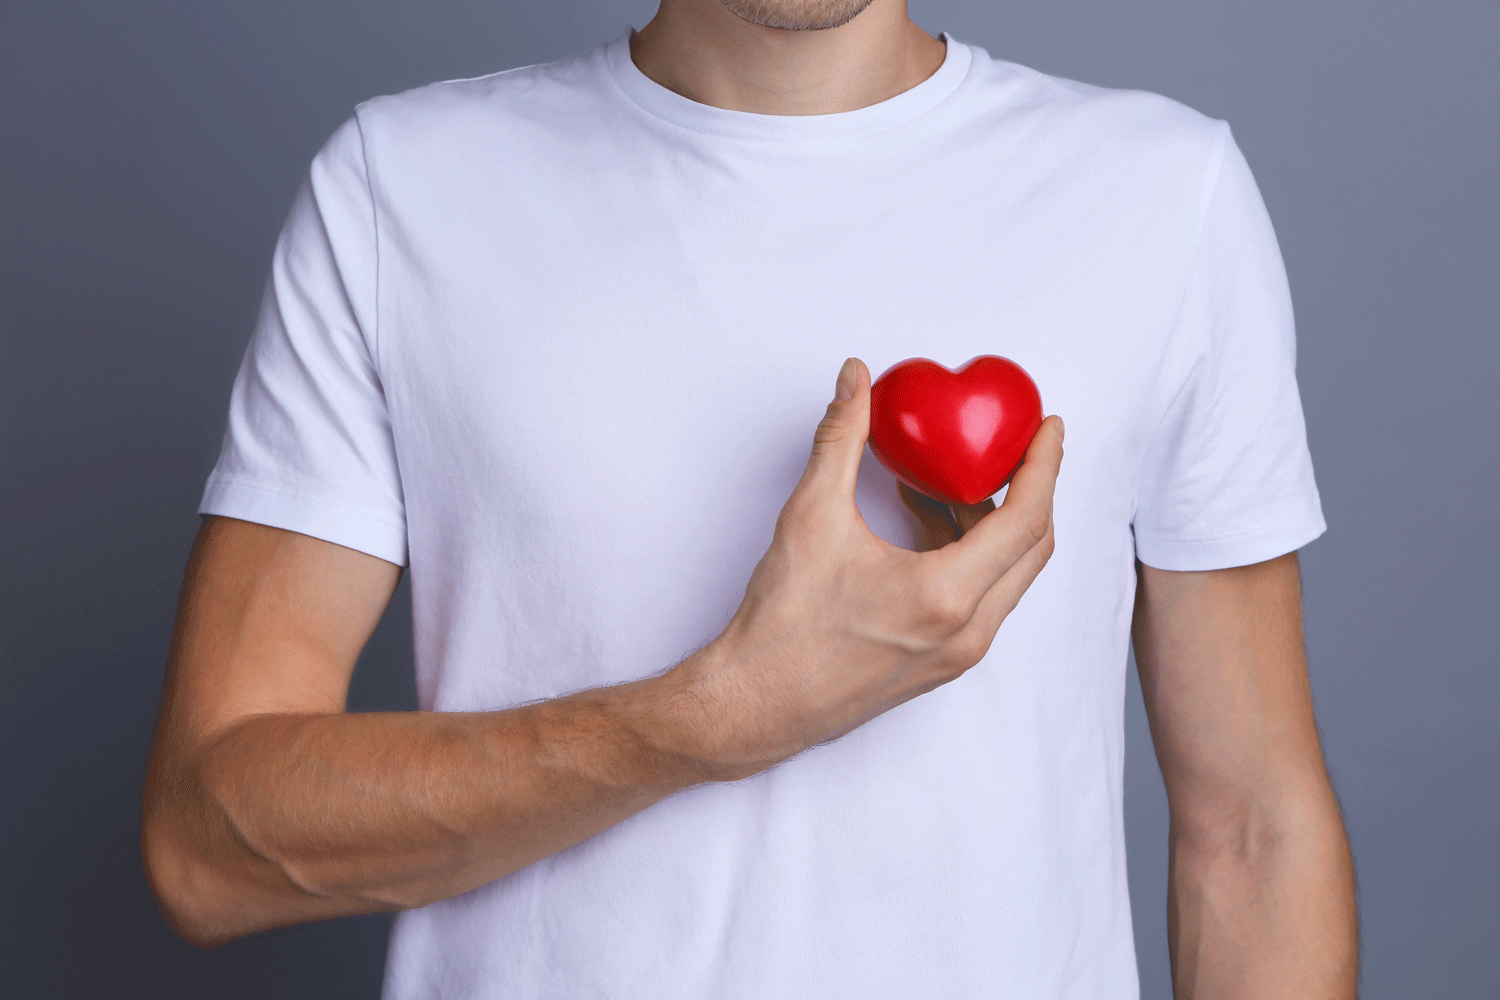 Mann in weißen T-Shirt hält mit seiner Hand ein rotes Herz an die linke Brust